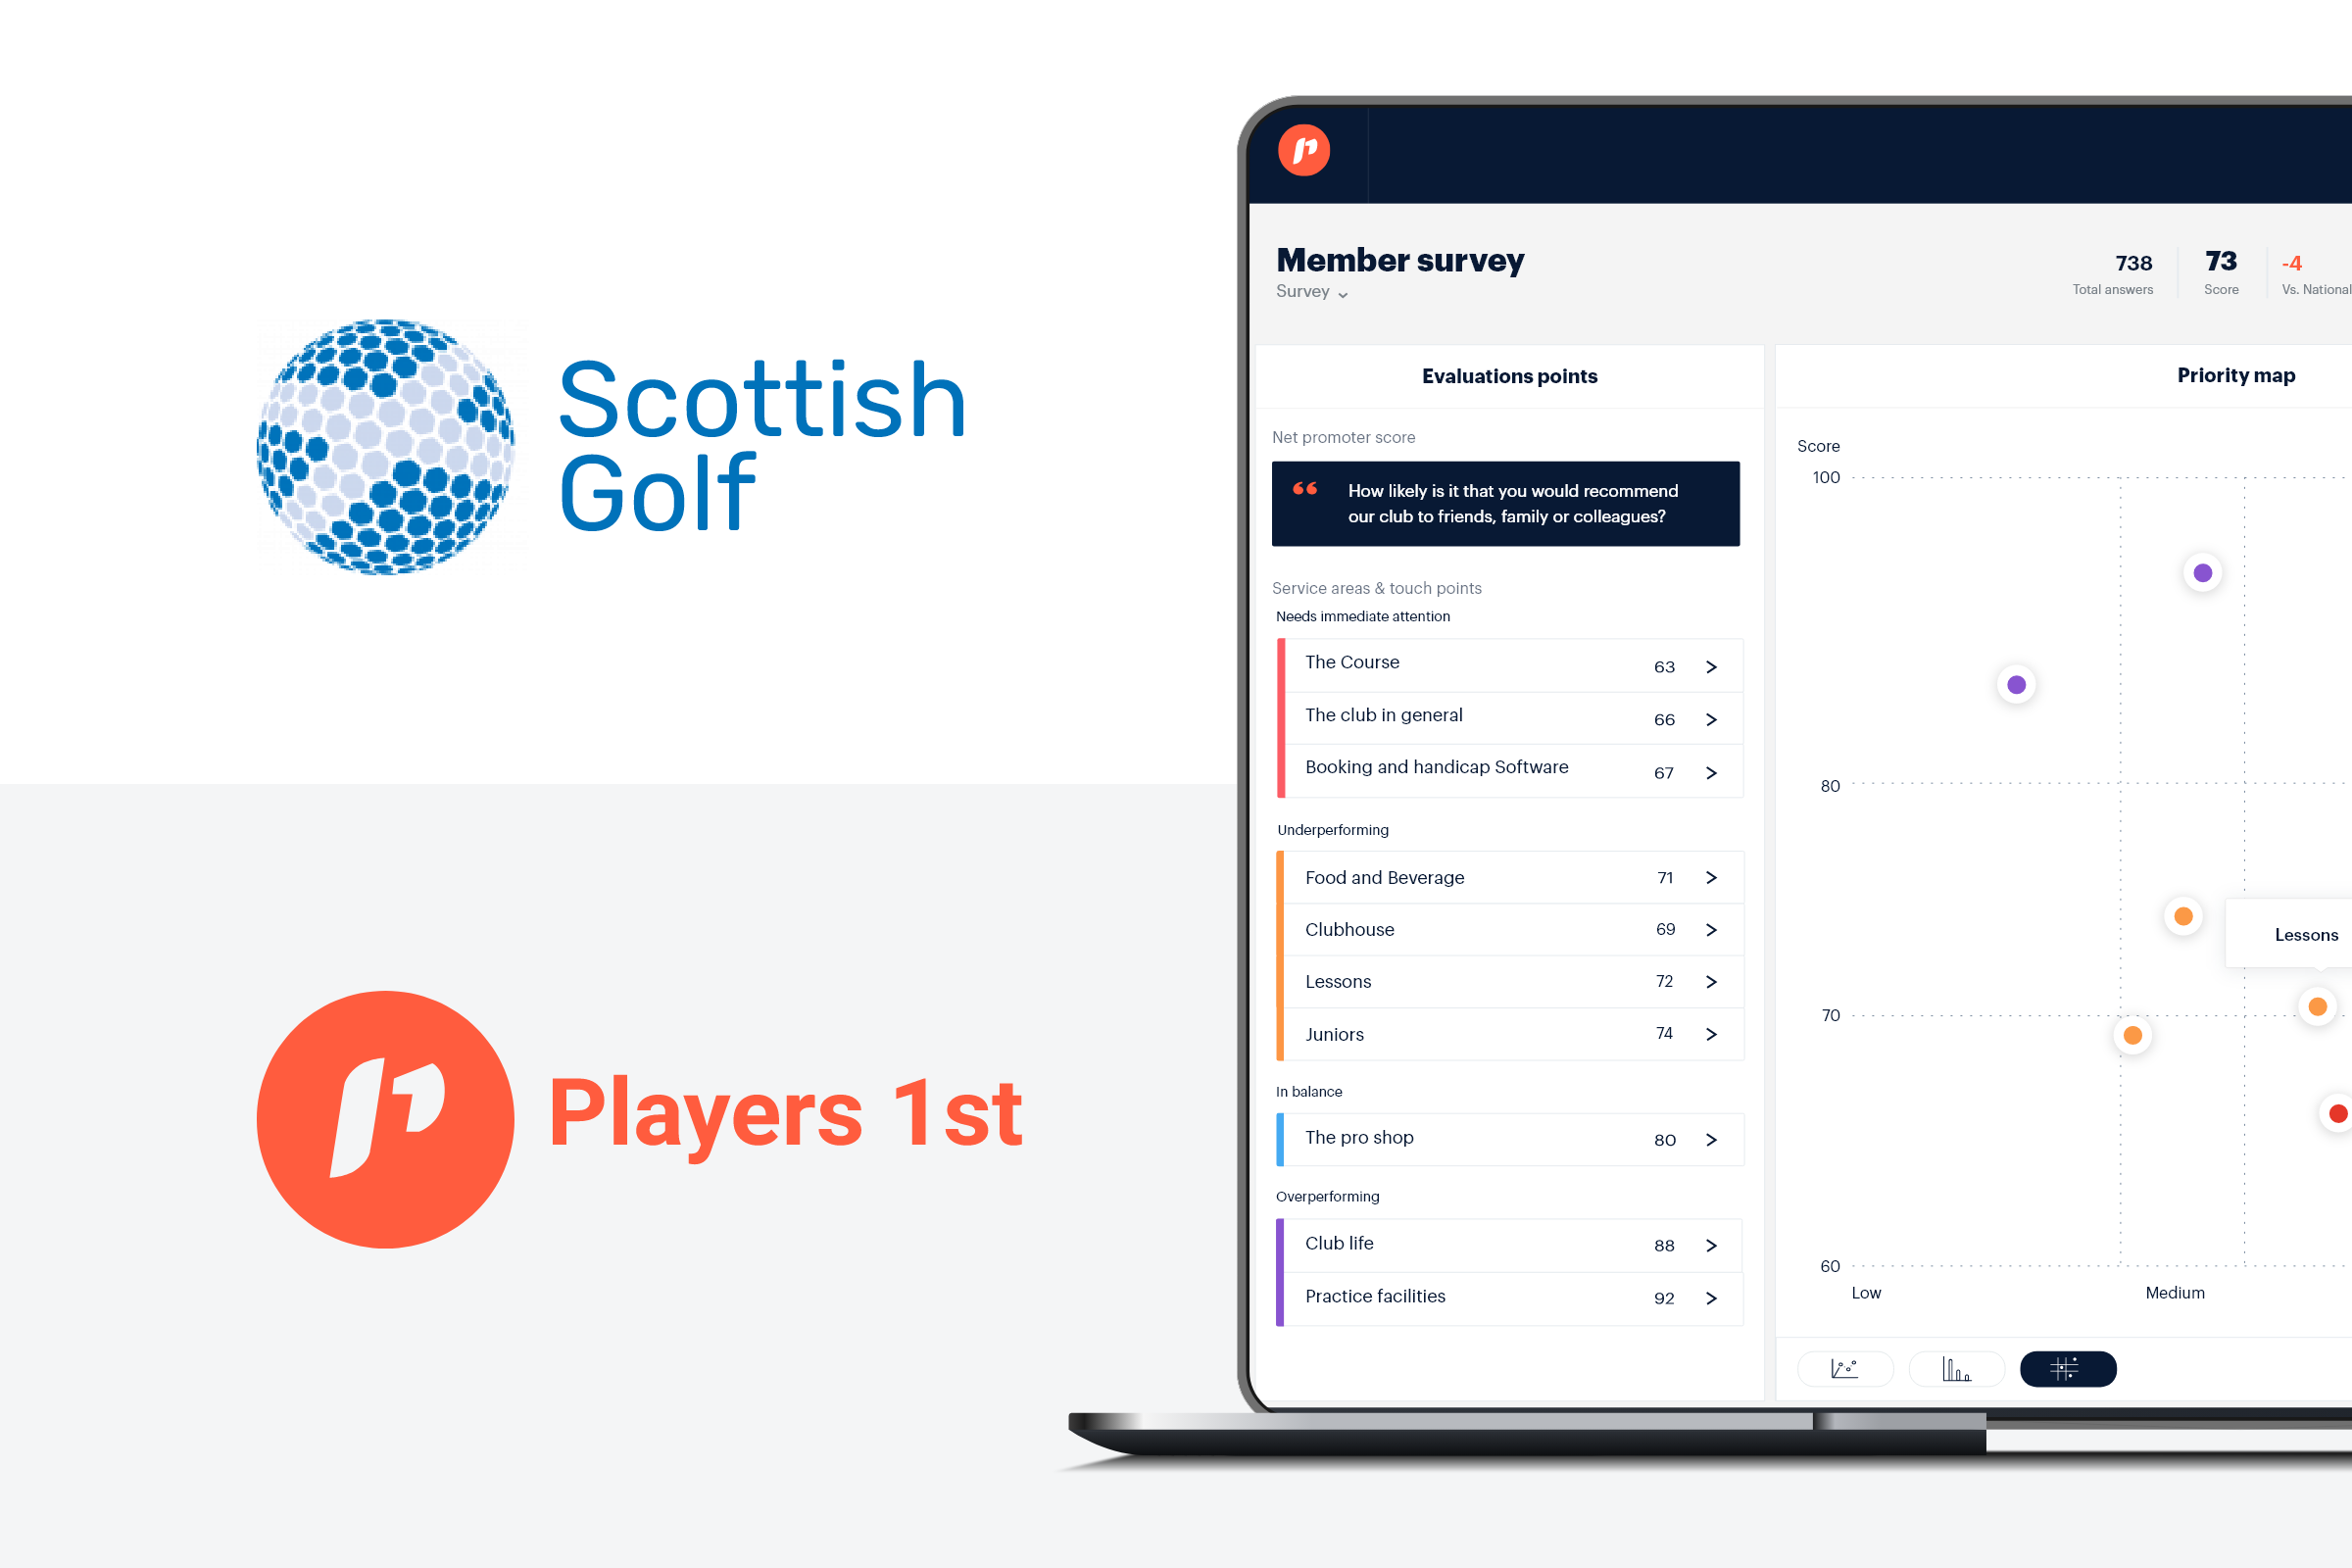 Scottish Golf Partnership